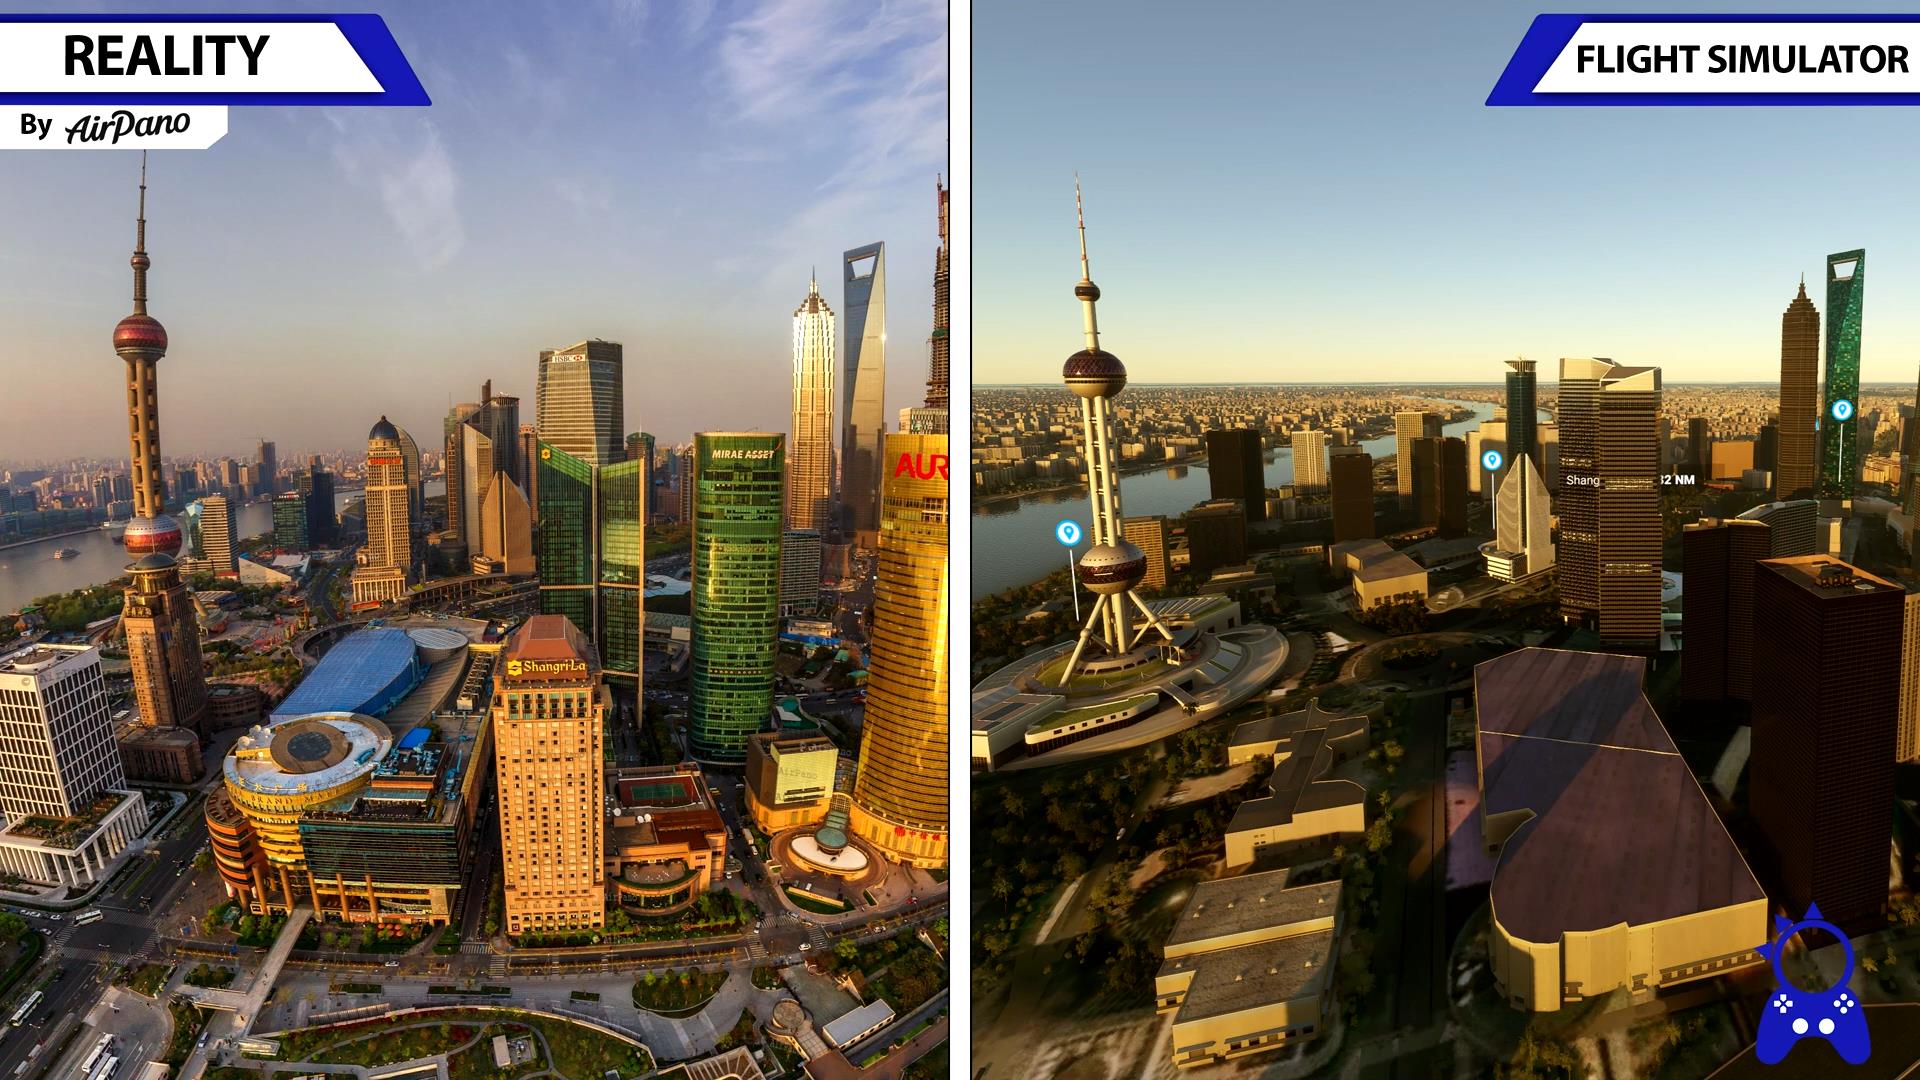 《微软飞行模拟》对比视频 游戏画面与现实场景难以区分